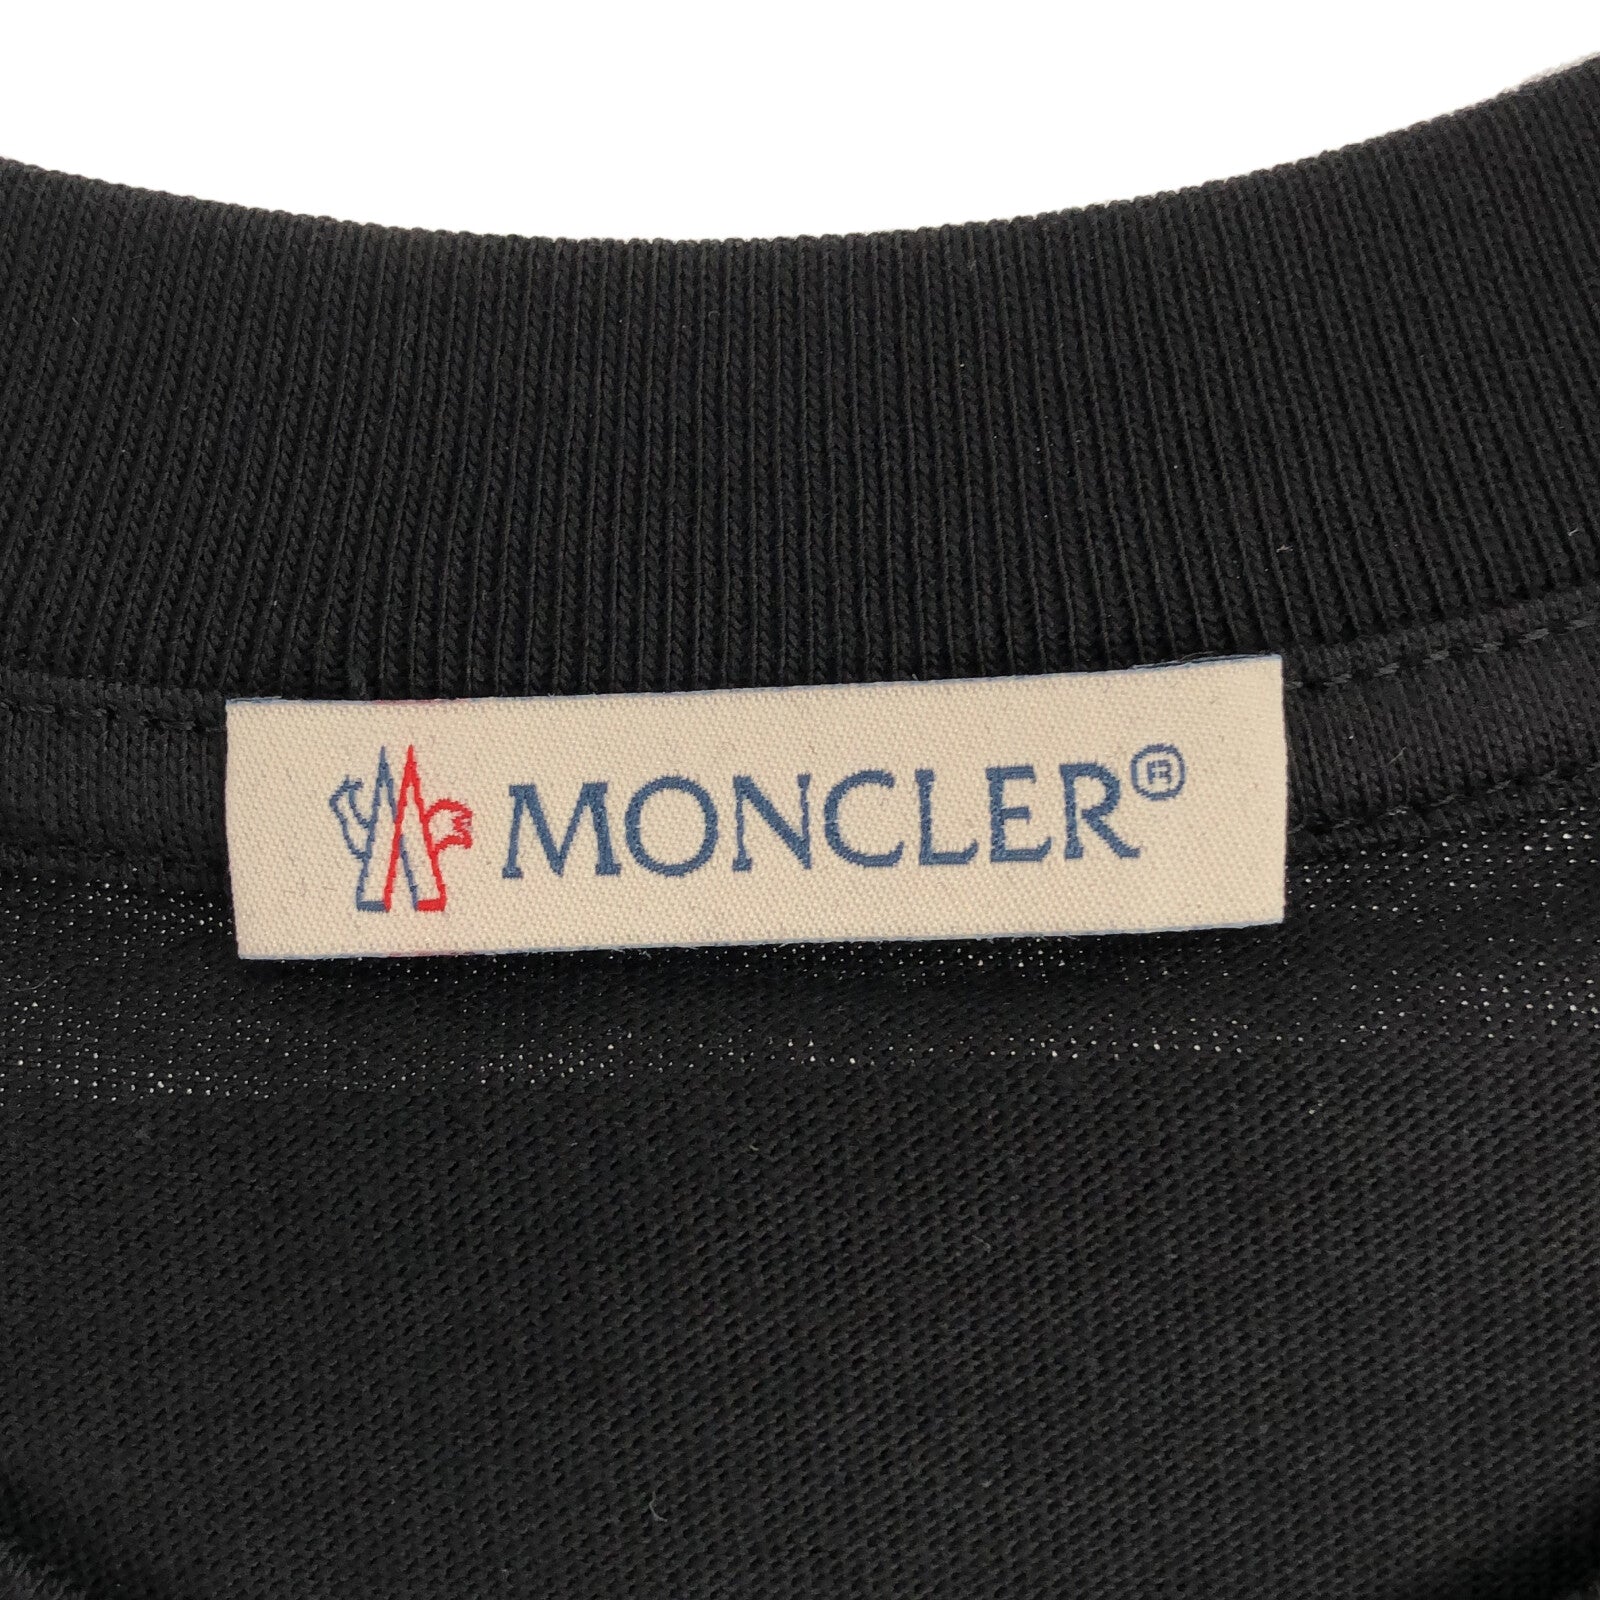 Moncler MONCLER  Half-Hand   Tops Cotton  Black 8C00006829HP999S